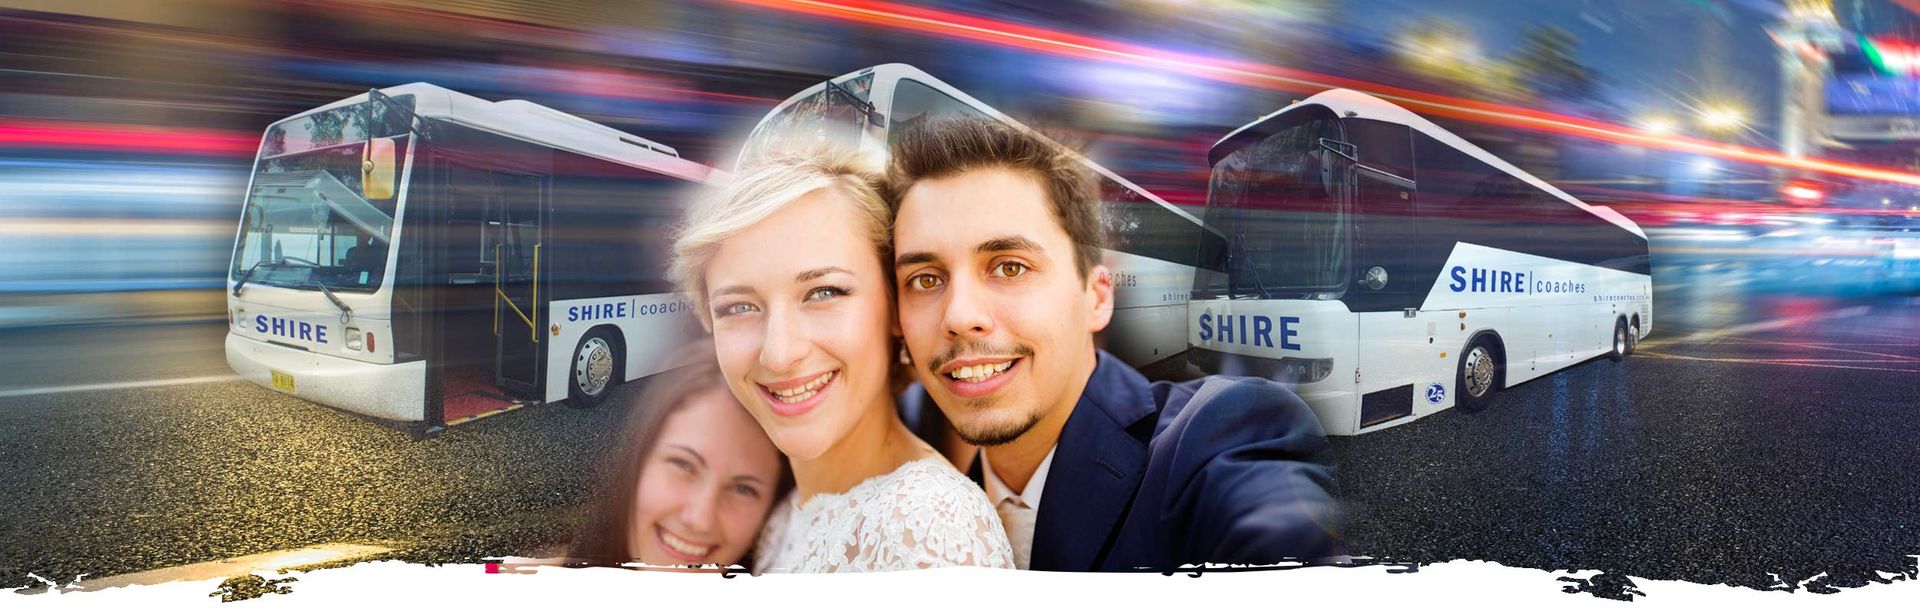 wedding bus charters image